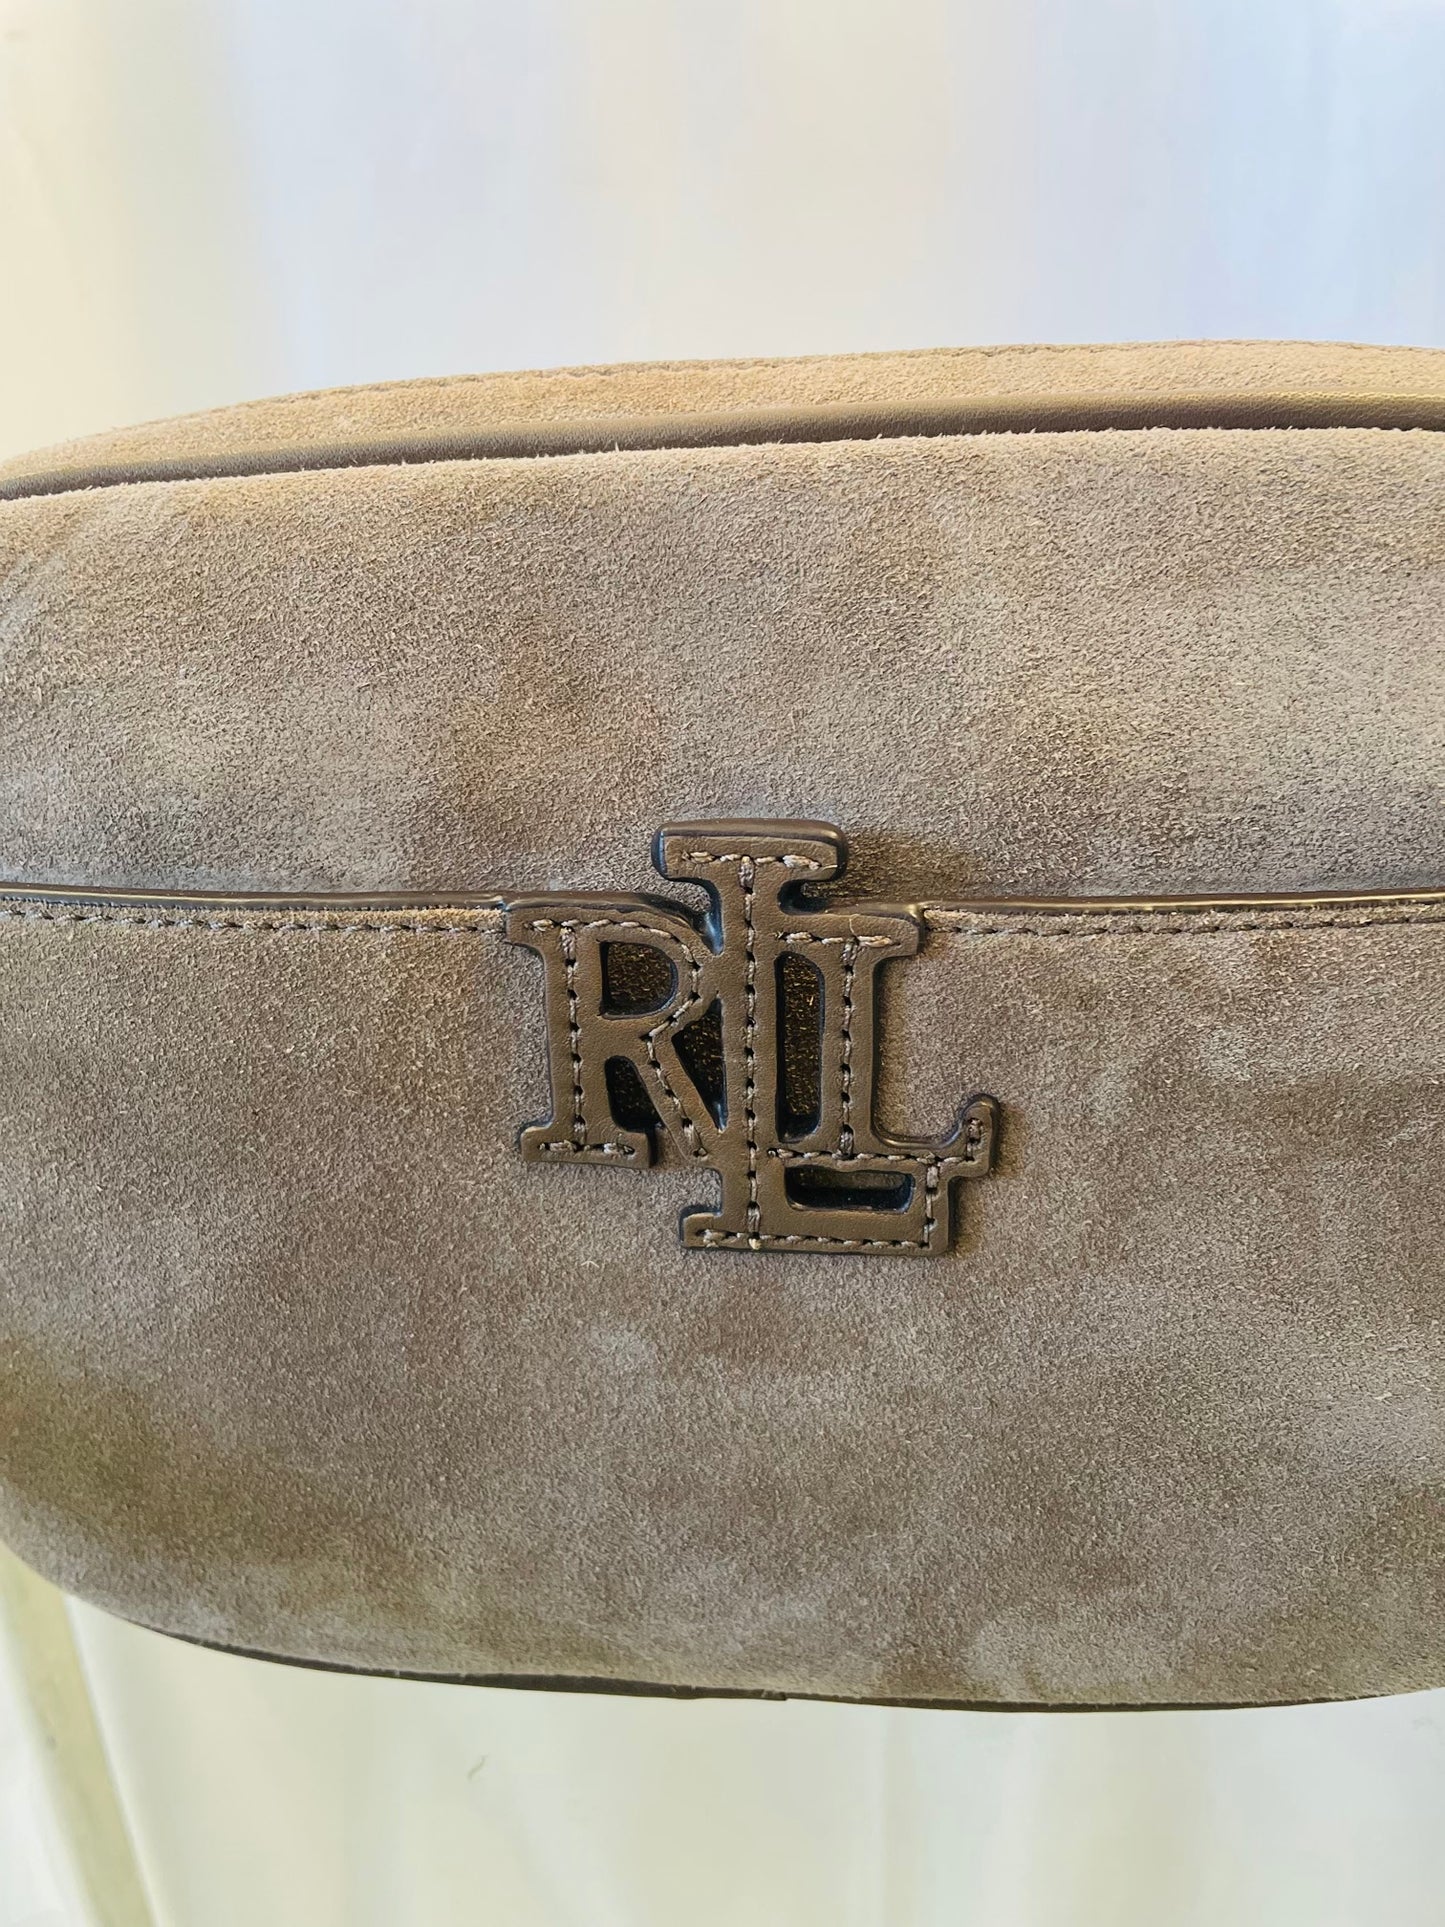 Ralph Lauren bag